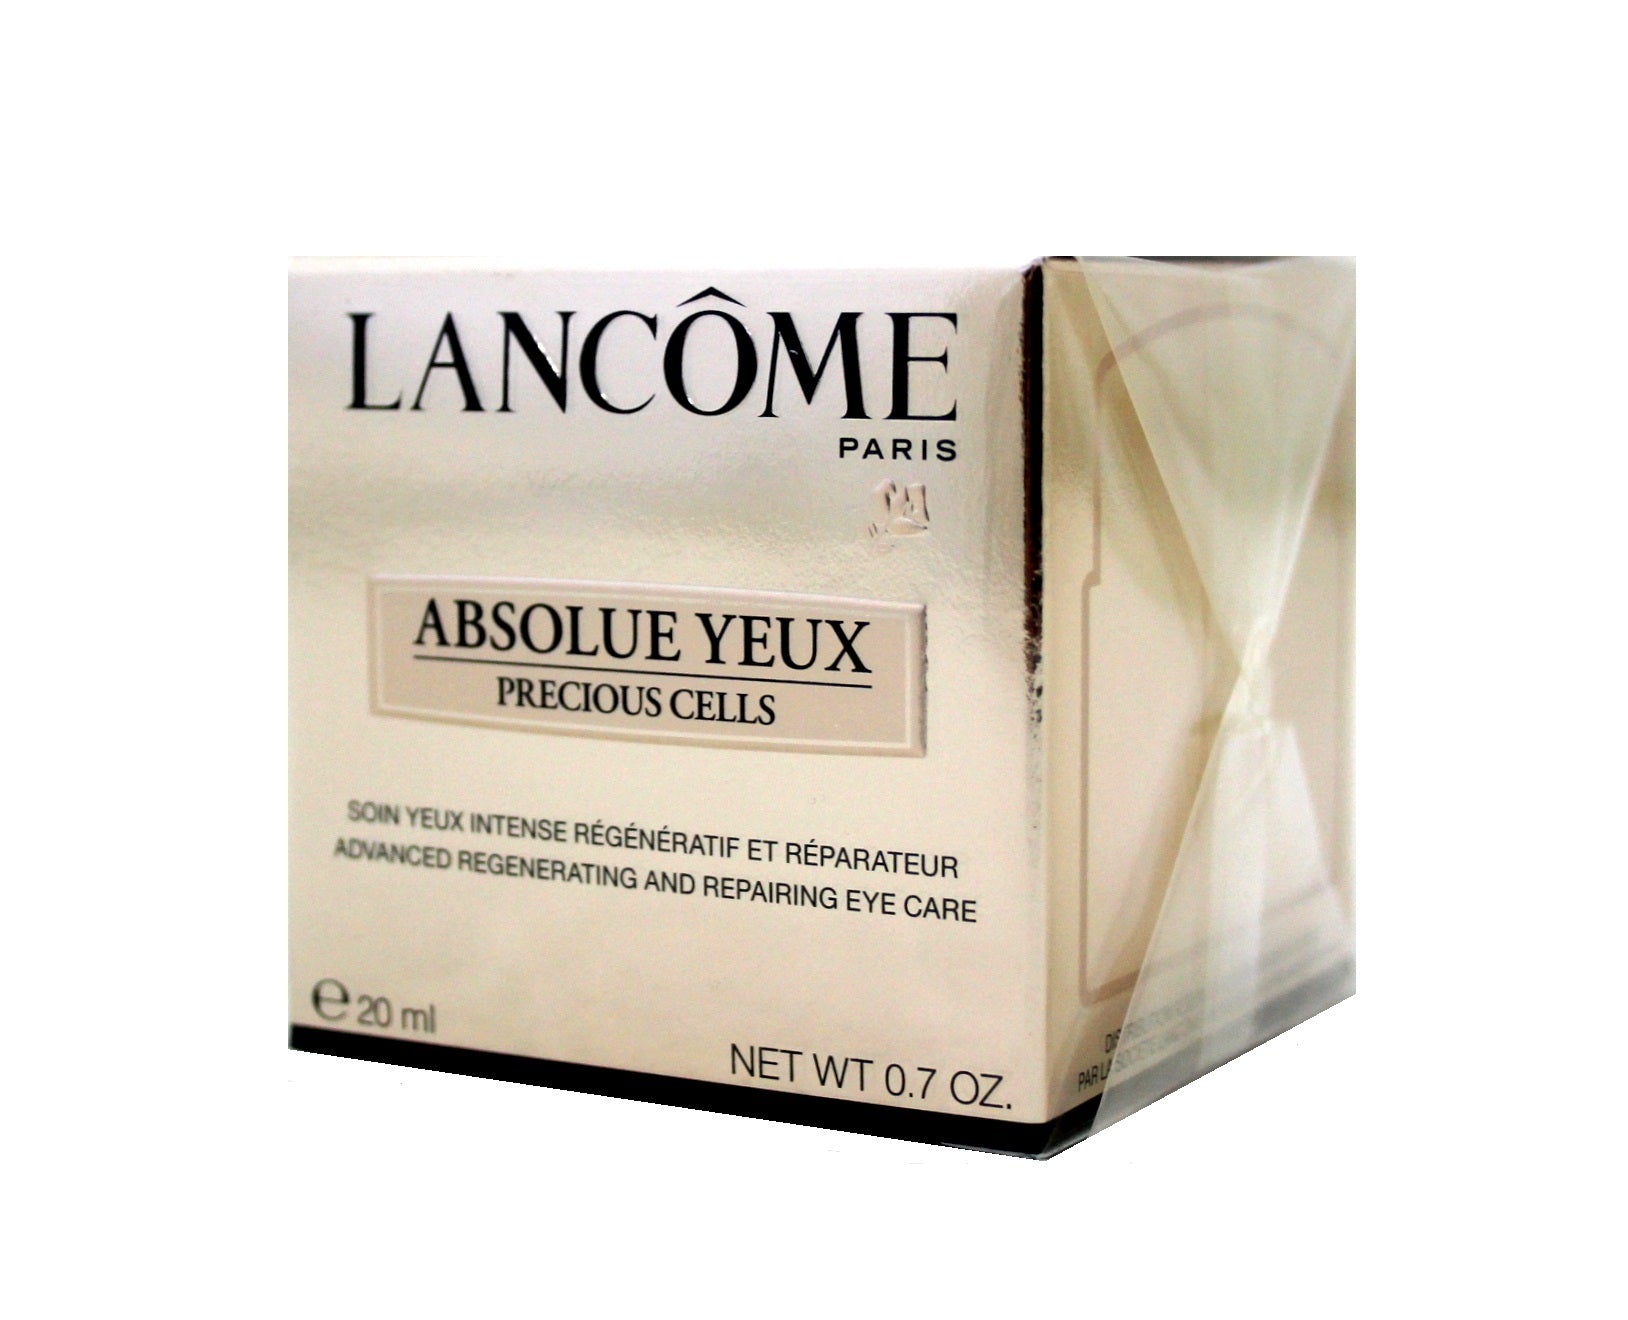 Lancôme Absolue Yeux precious Cells 20 ml